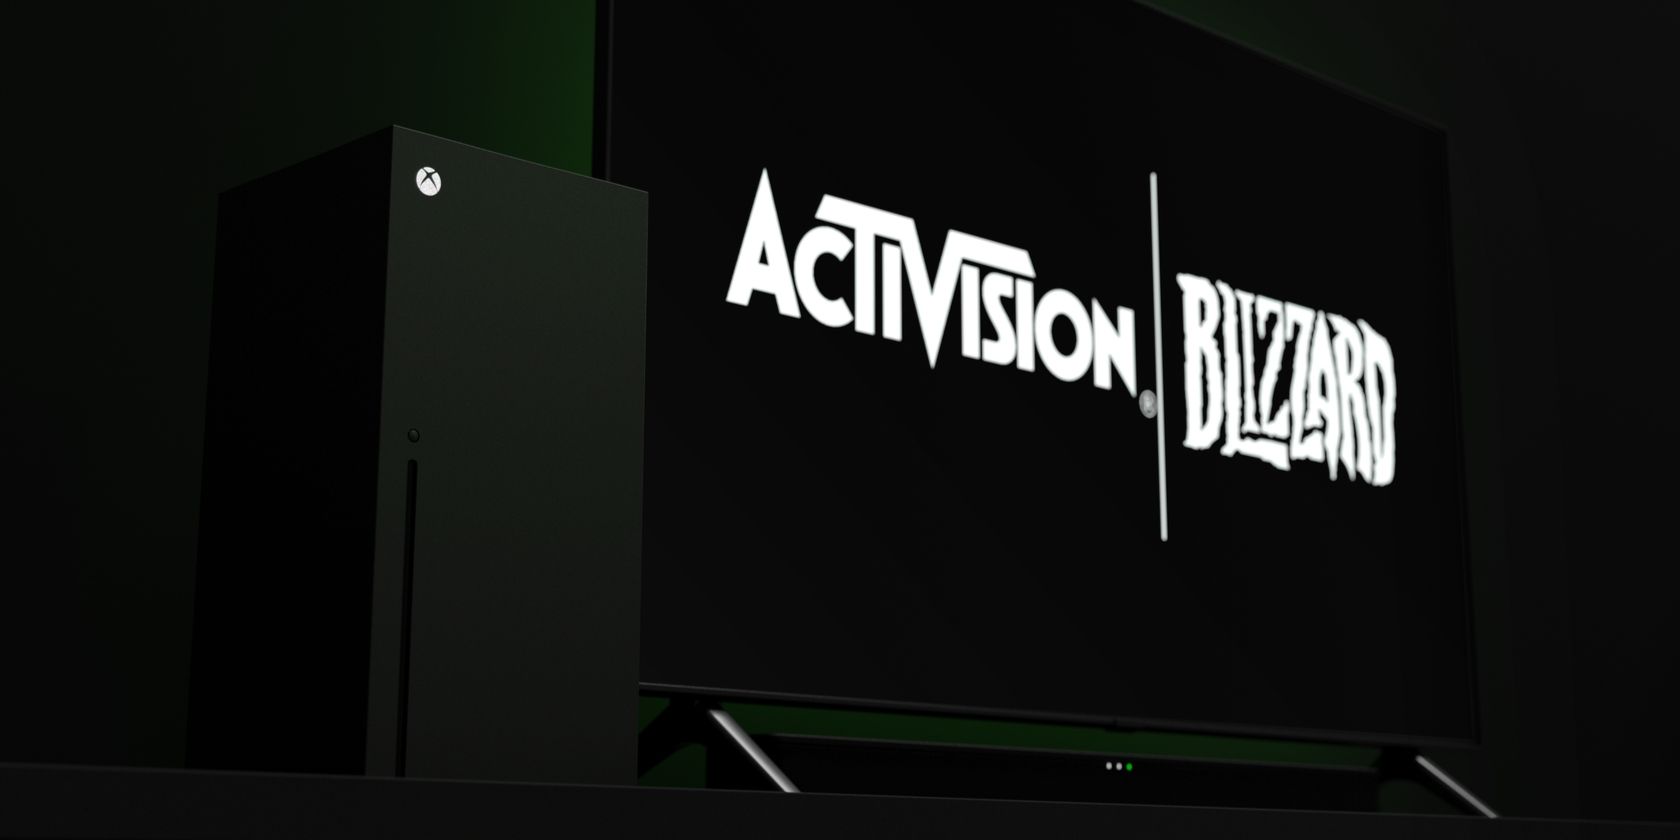 The Activision Blizzard logo next to an Xbox